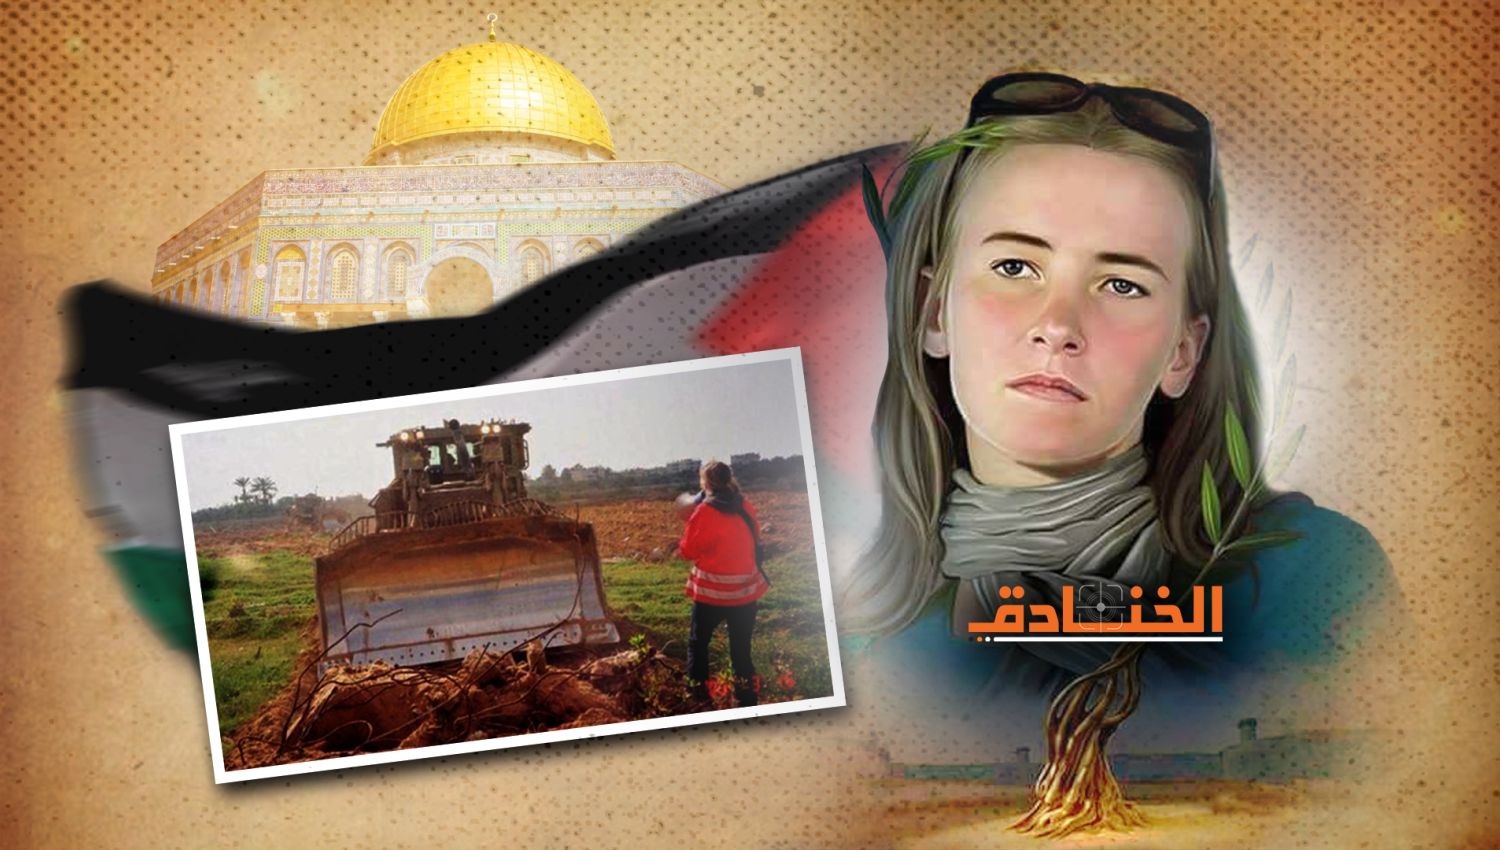 راشيل كوري: حقوقية أمريكية قتلتها "اسرائيل" في غزة!